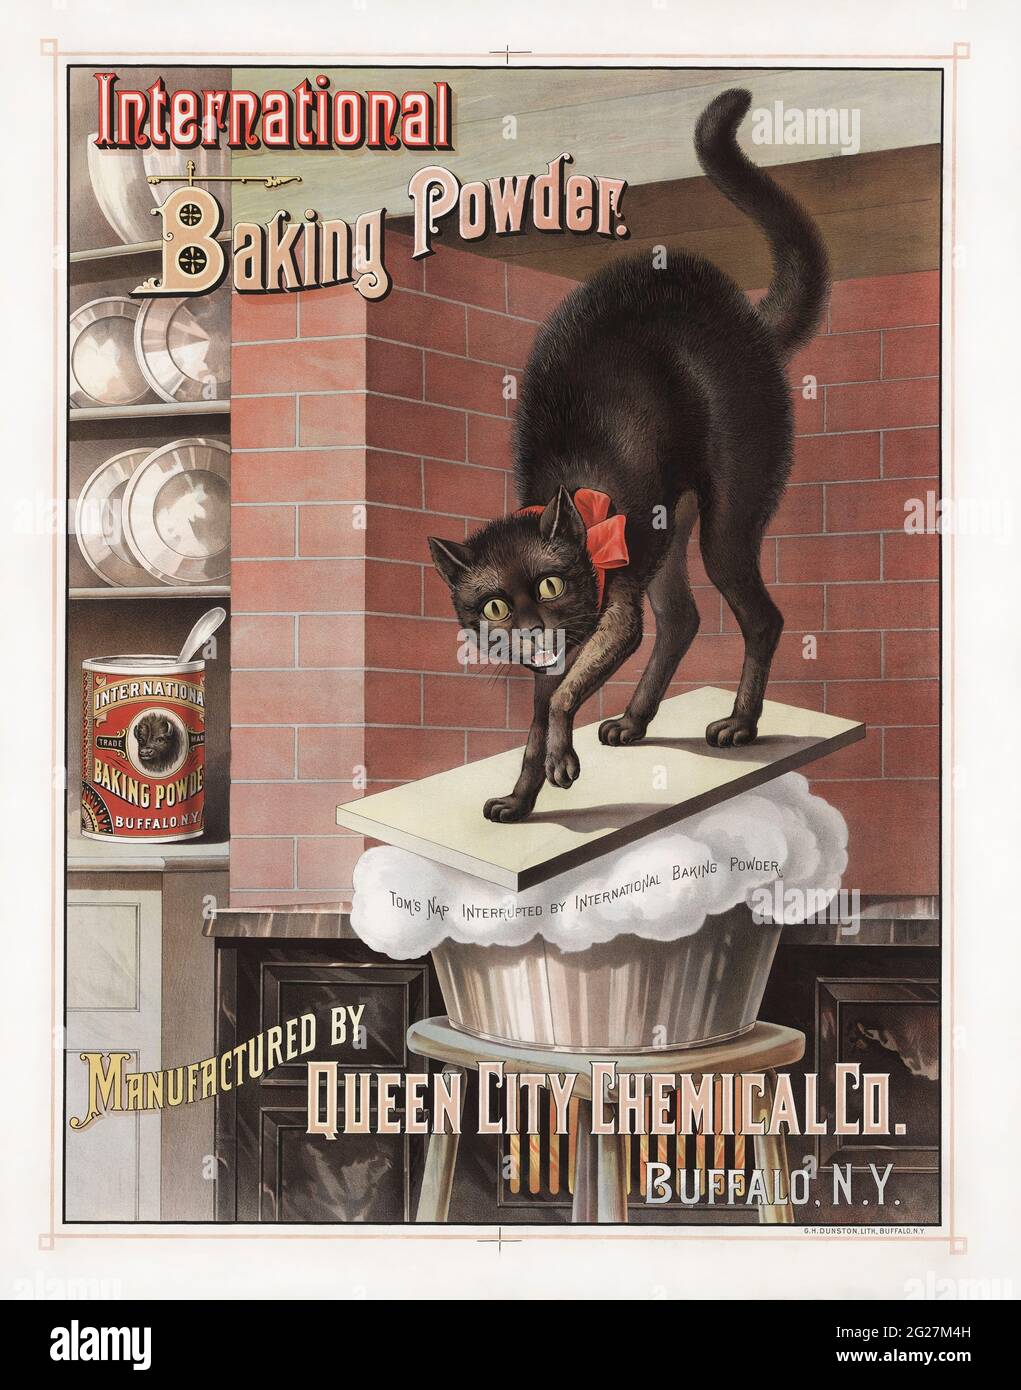 Werbung für International Brand Baking Powder, zeigt eine Katze, die durch das Aufsteigen des Brotes geweckt wird. Stockfoto